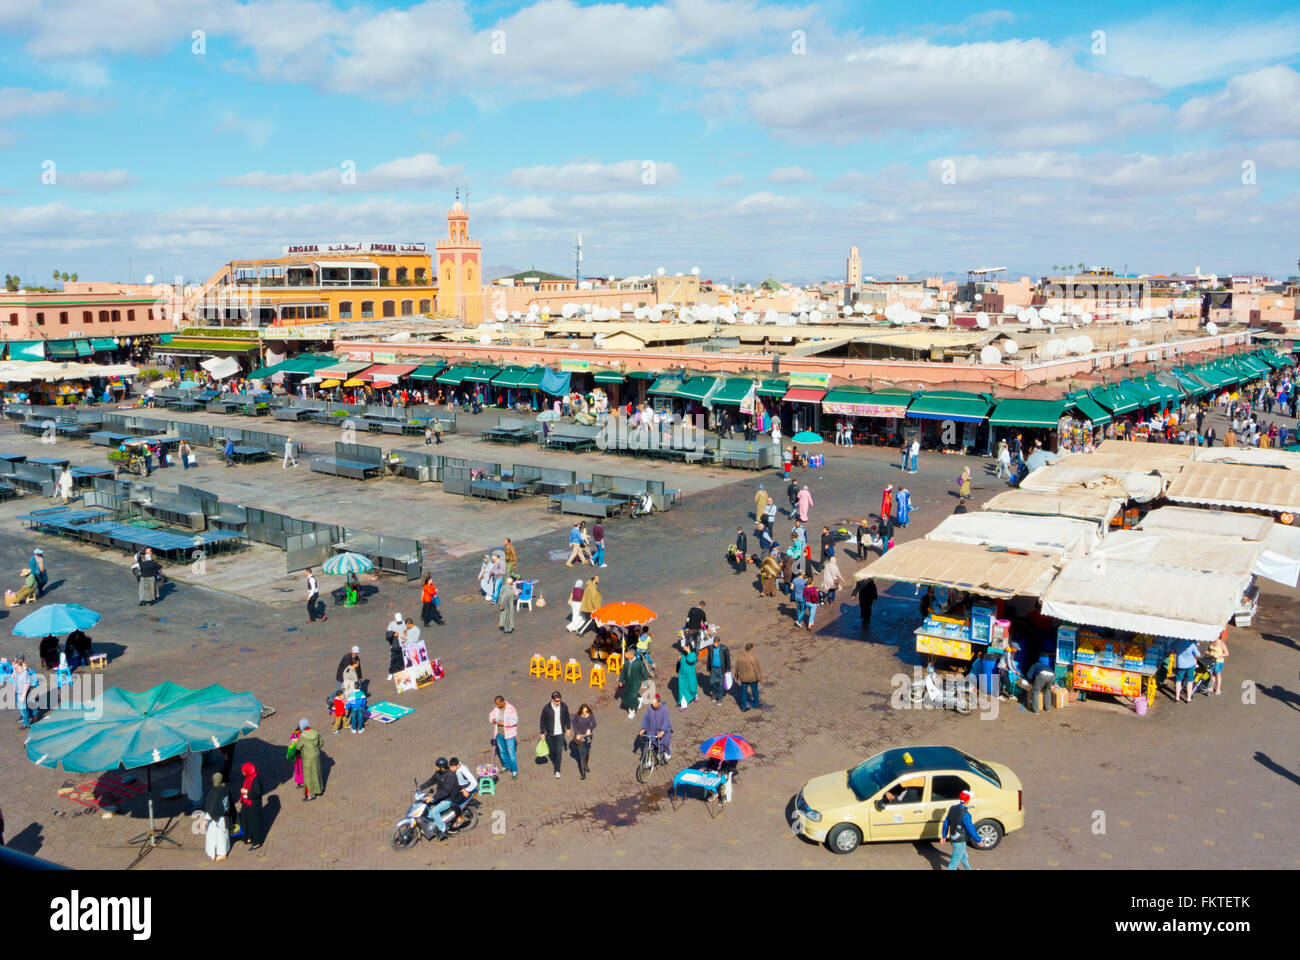 Jemaa el-Fnaa, medina, Marrakesh, Morocco, northern Africa Stock Photo